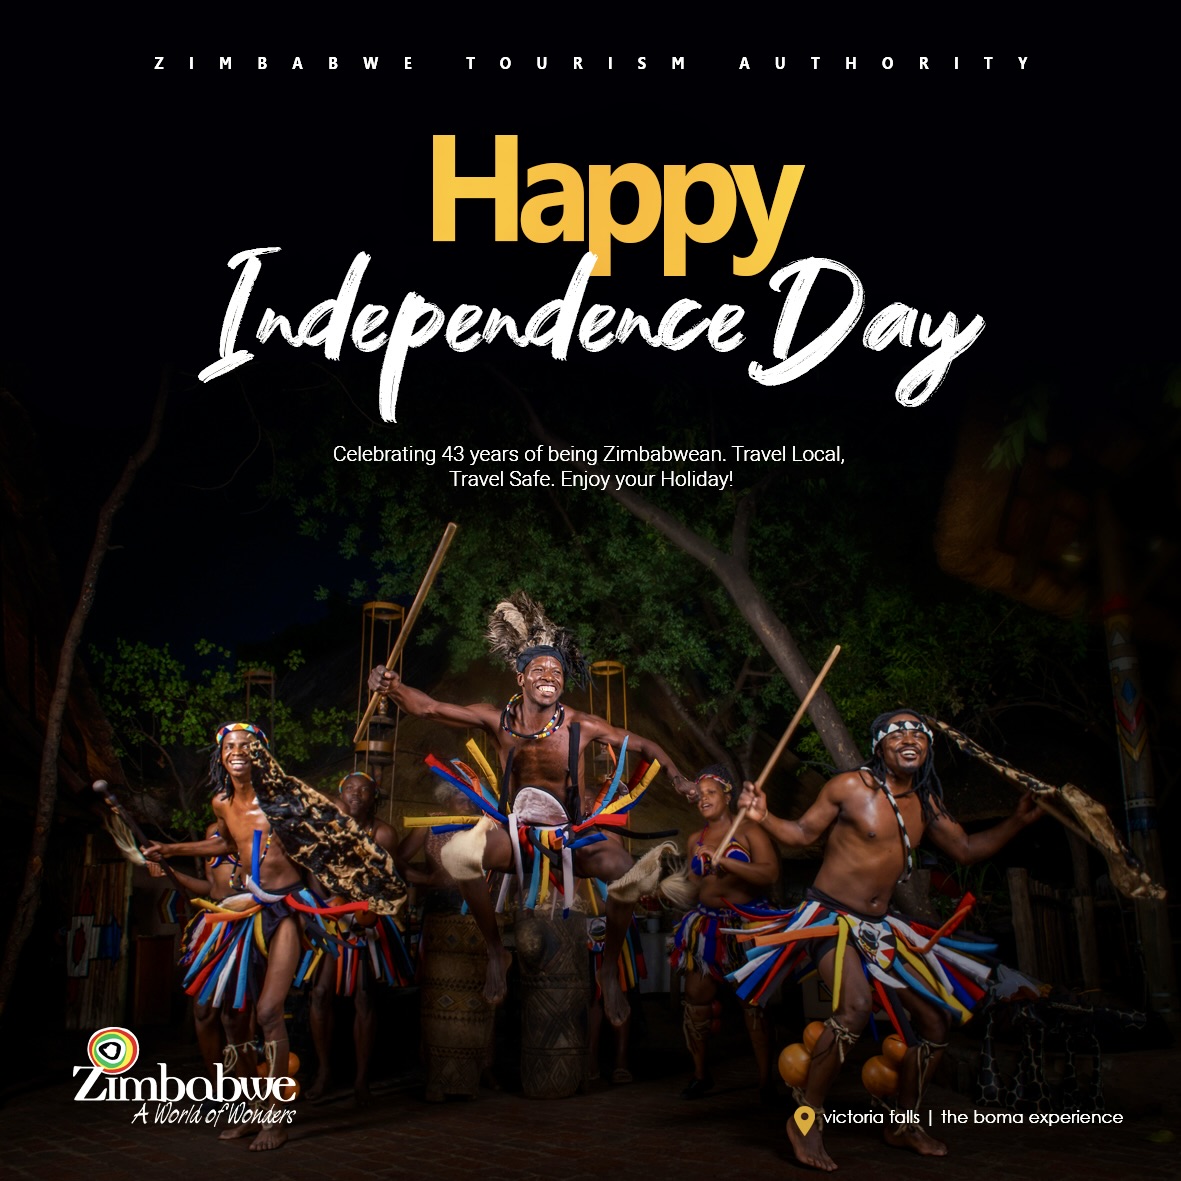 Celebrating 43 years of being Zimbabwean! Travel Local. Travel Safe. Enjoy your Holiday.
Happy Independence Day!
#VisitZimbabwe
#MeetInZim 
#Vakatsha 
#ZimBho👍
#zim43 
#zimbabweindependence